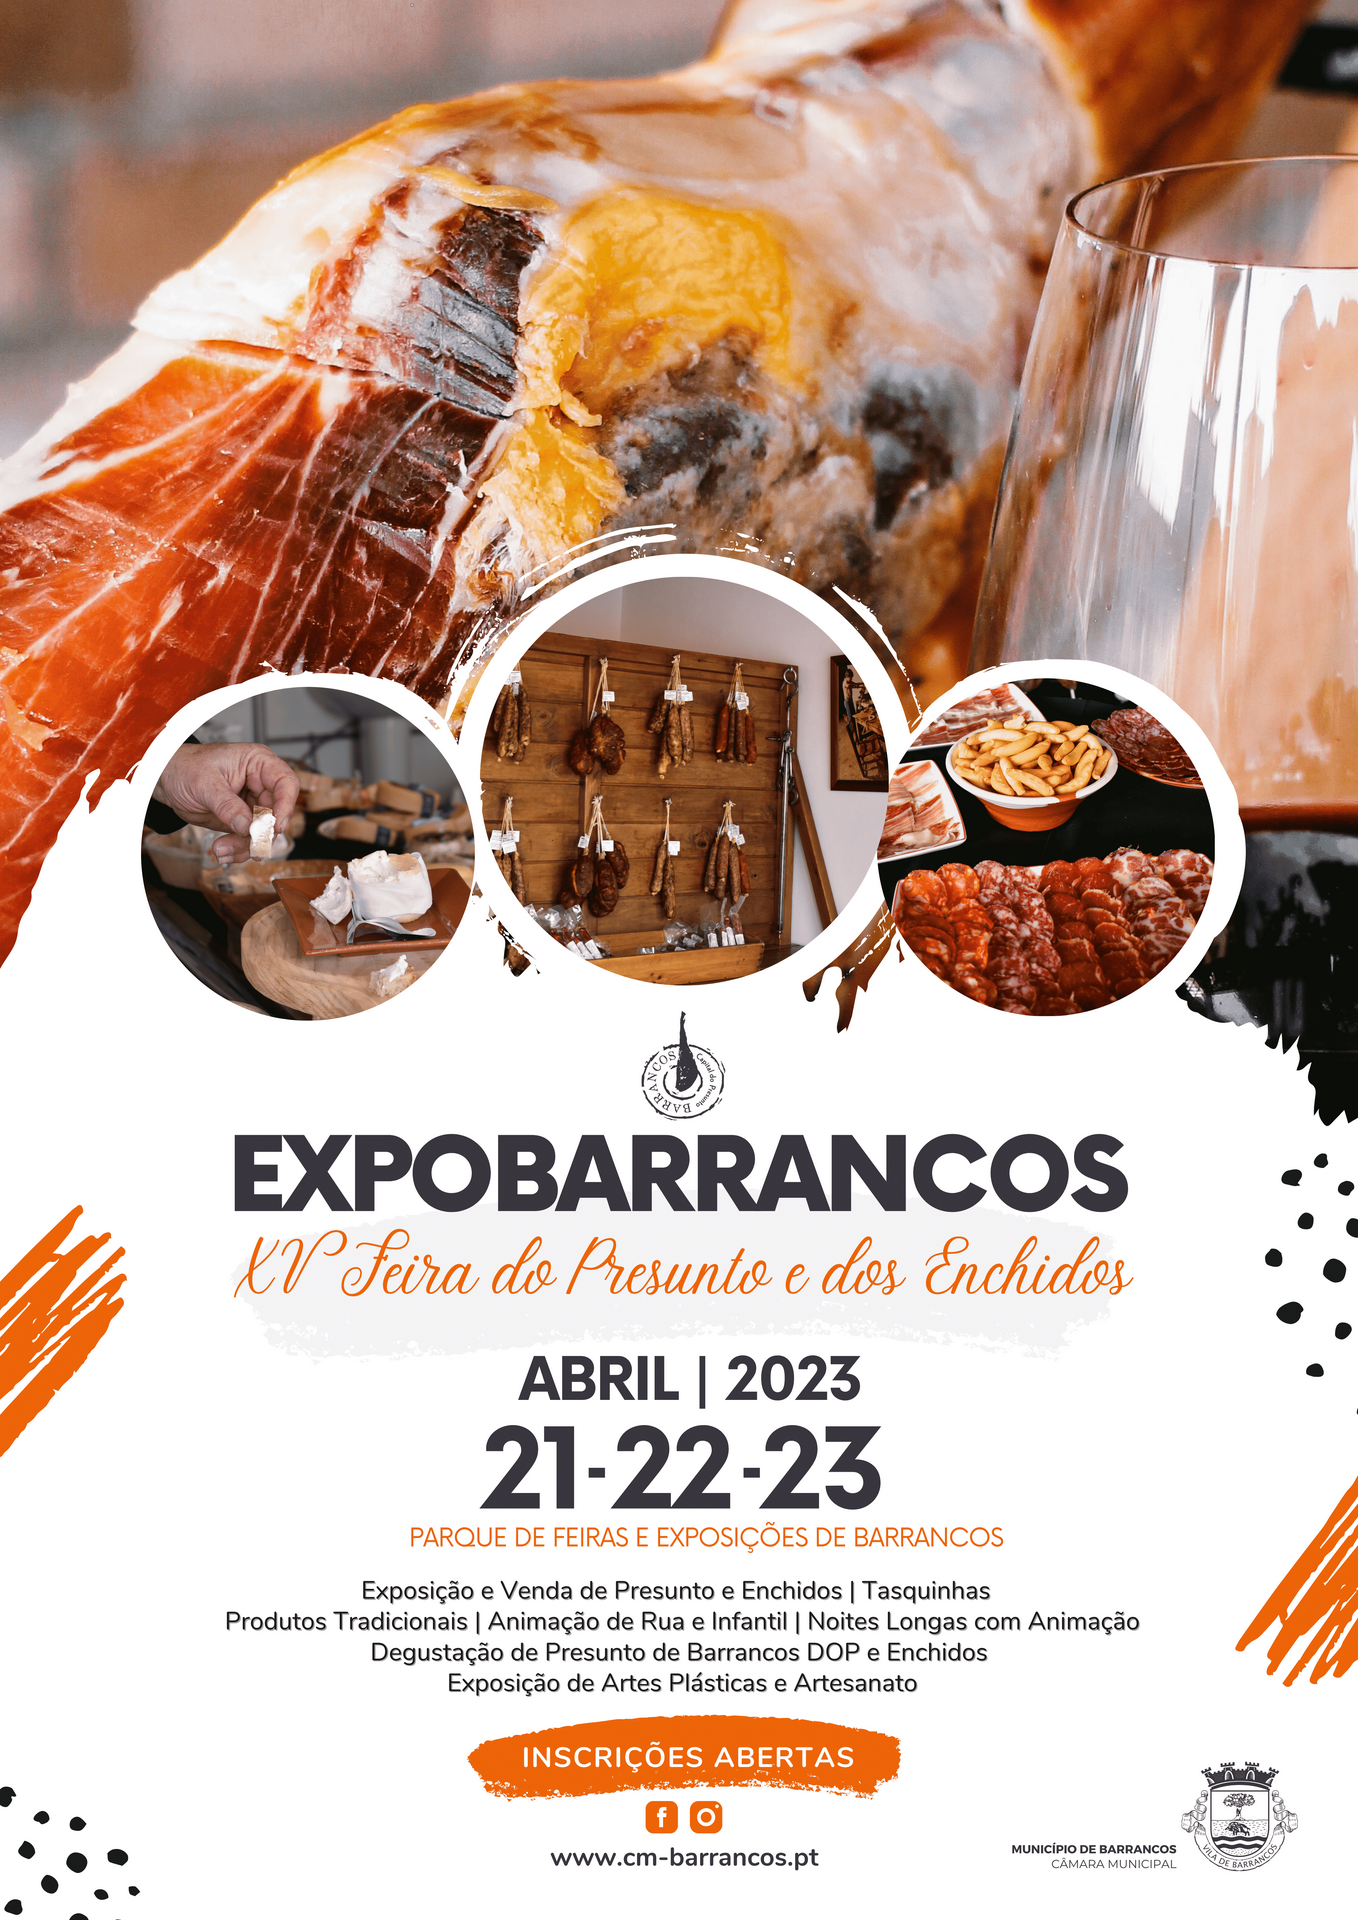 ExpoBarrancos 2023